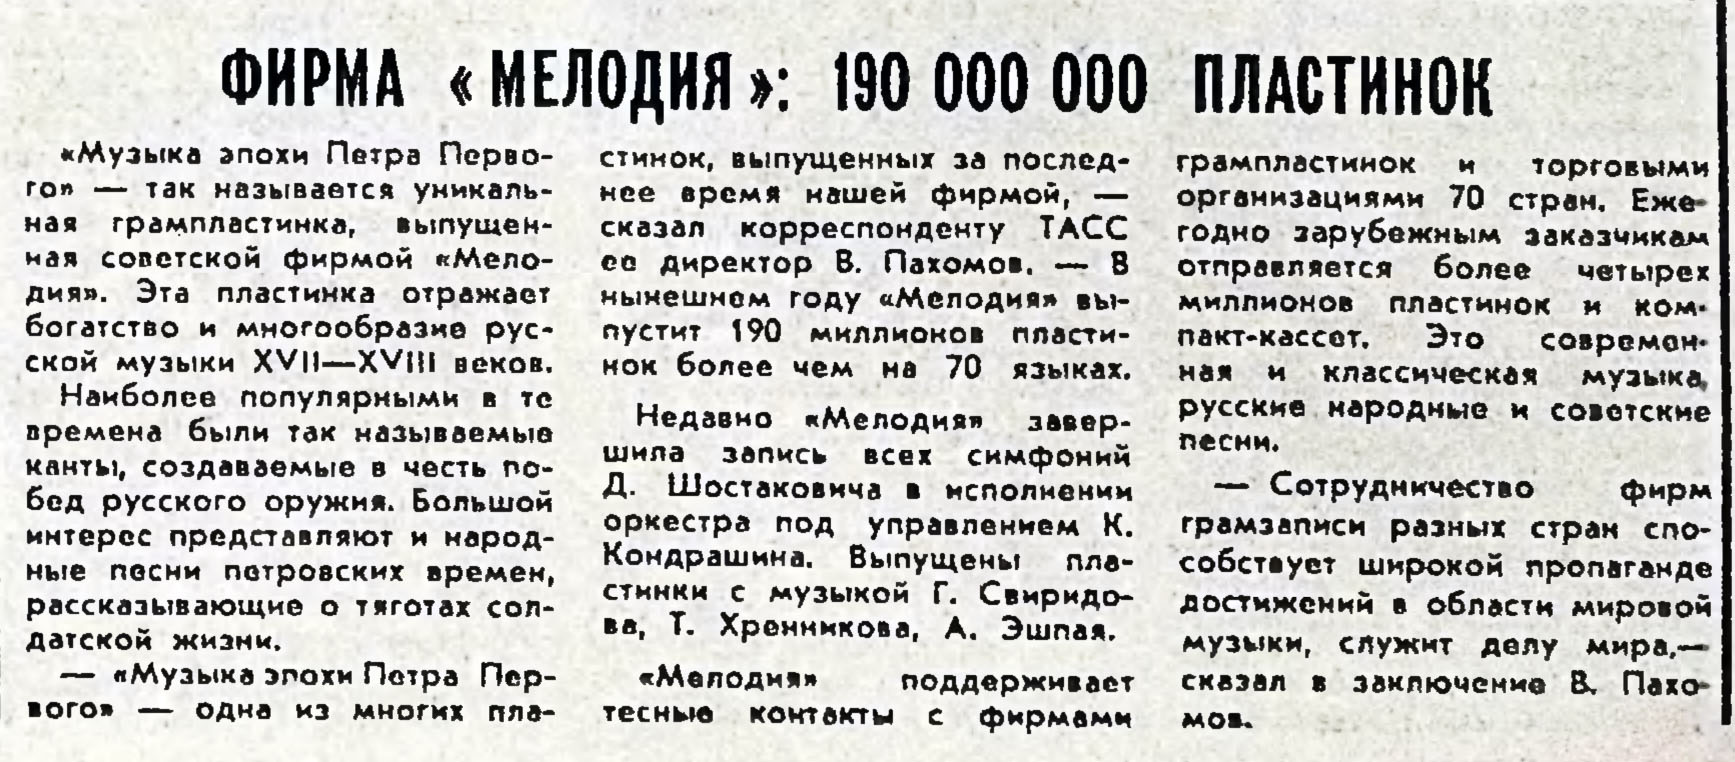 ФИРМА "МЕЛОДИЯ": 190 000 000 ПЛАСТИНОК